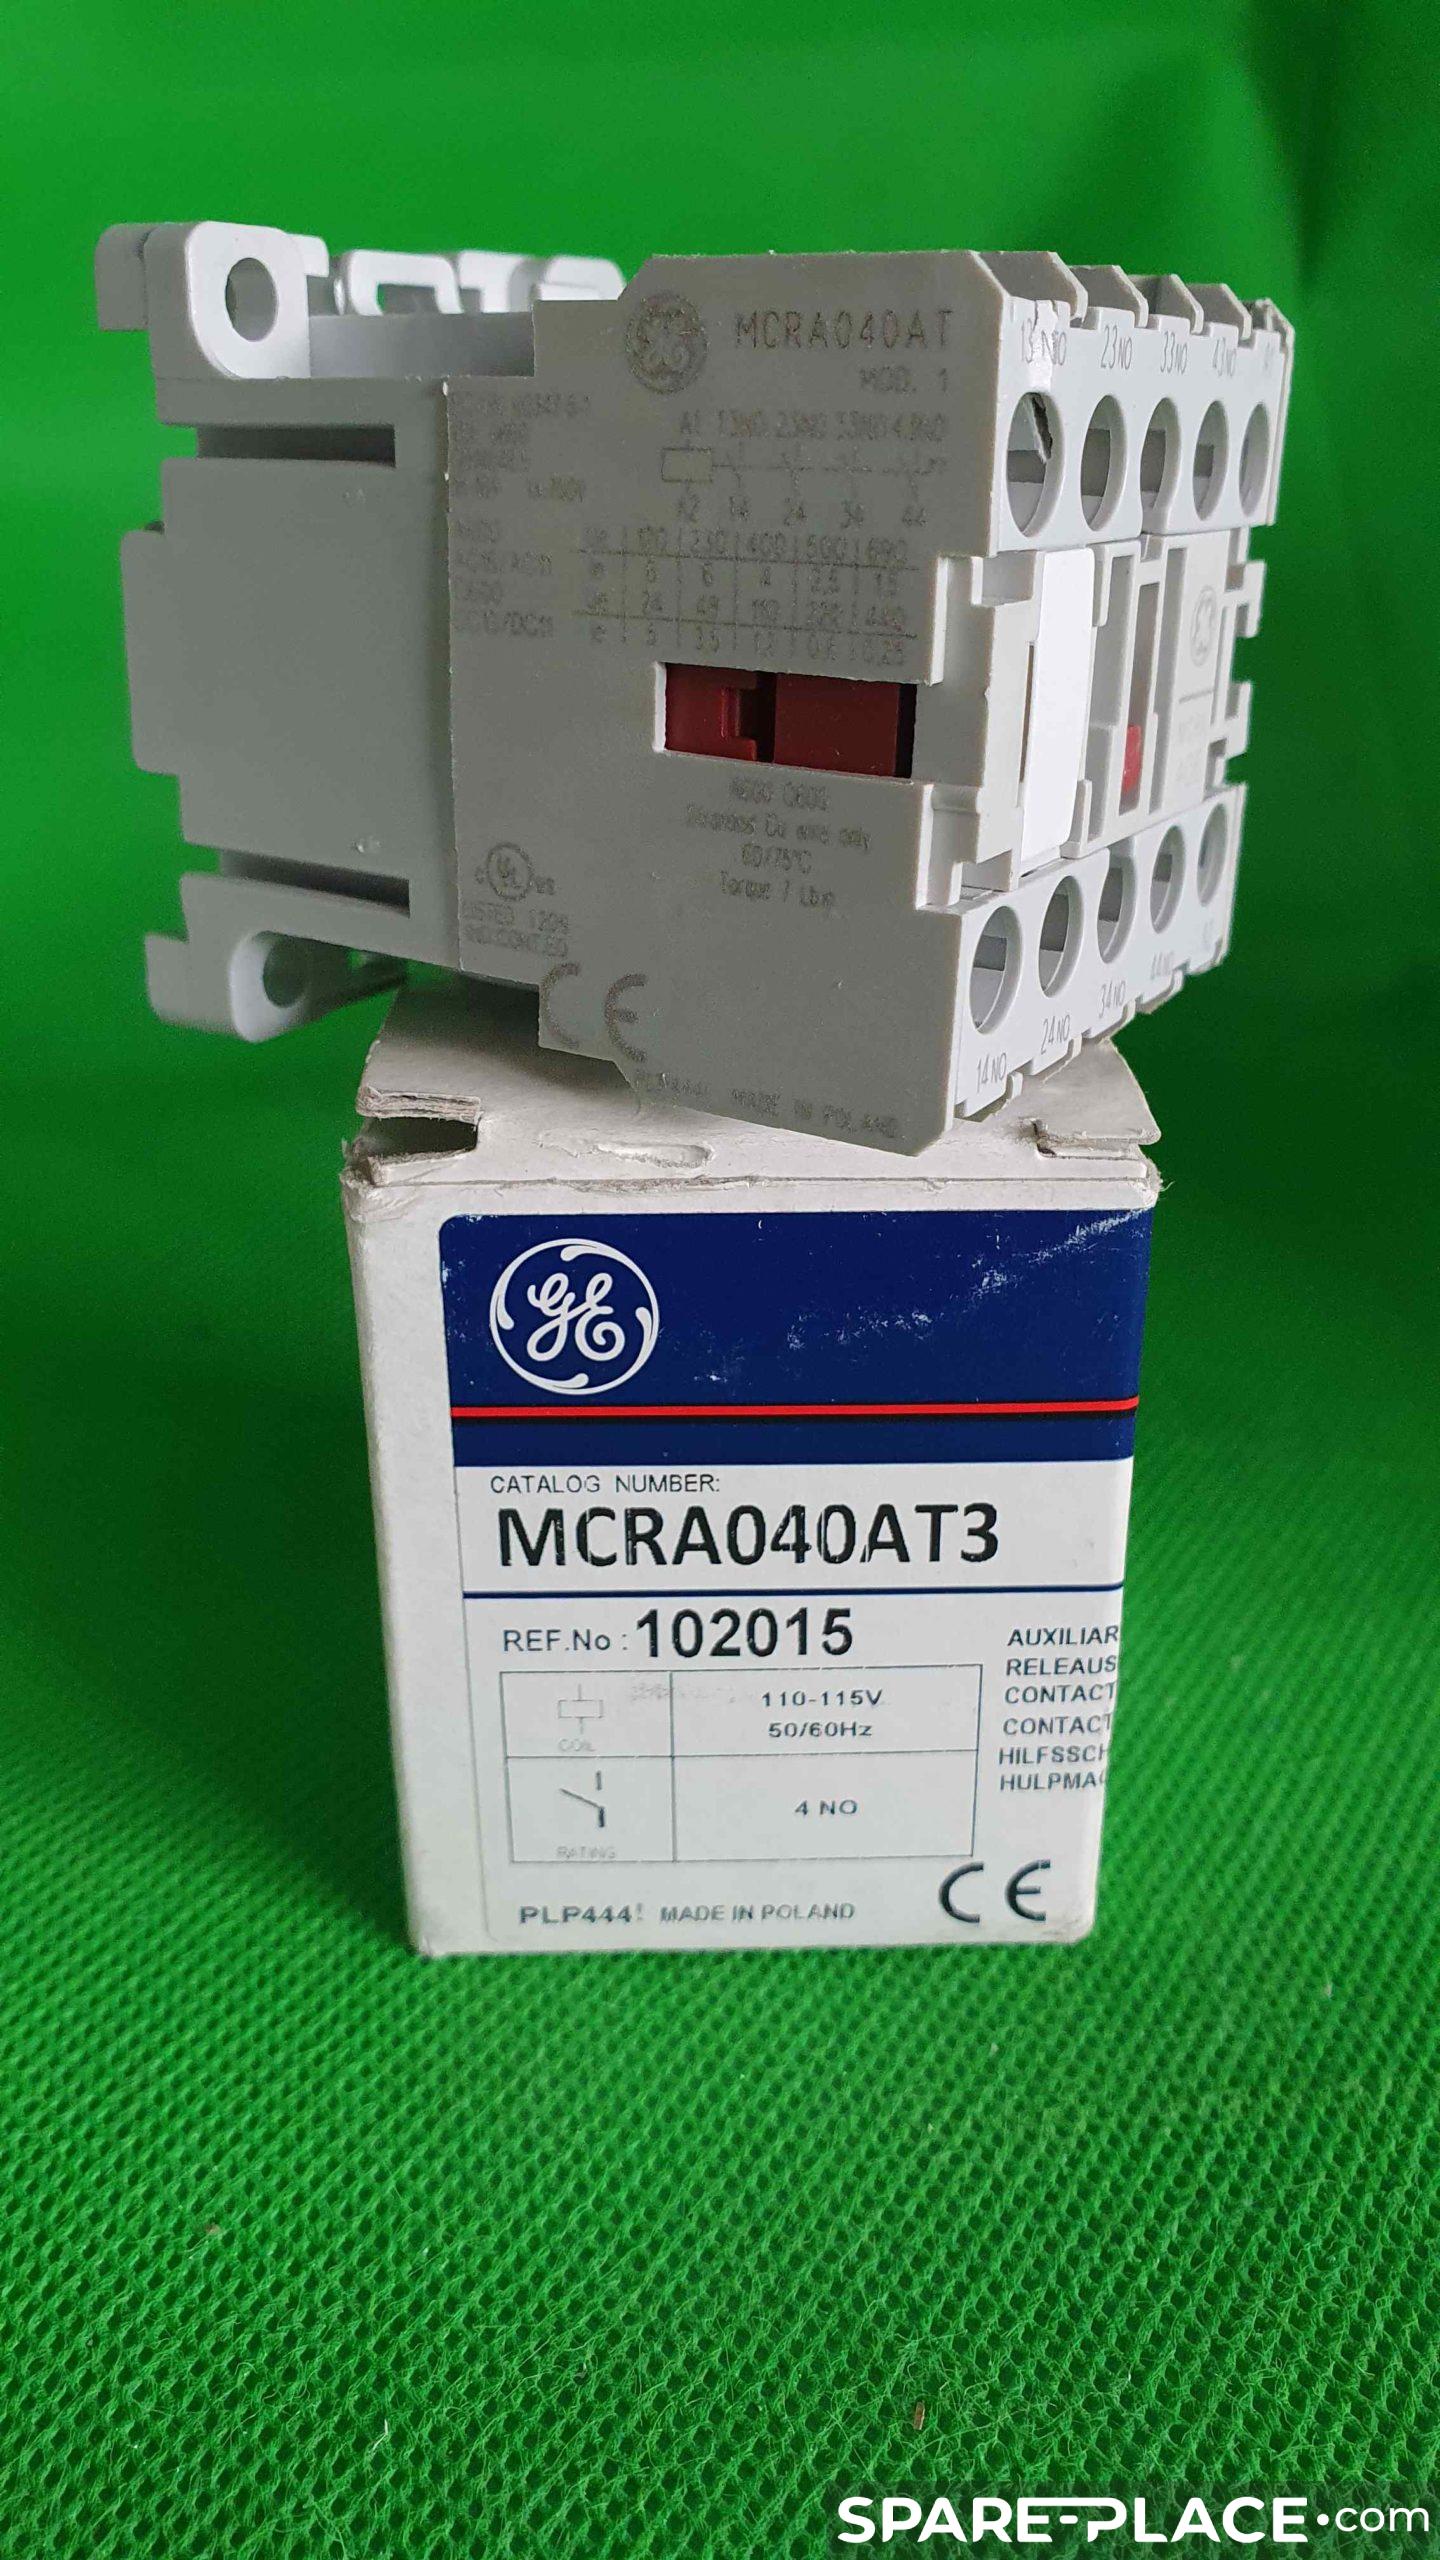 Référence MCRA040AT3 de la marque GE POWER